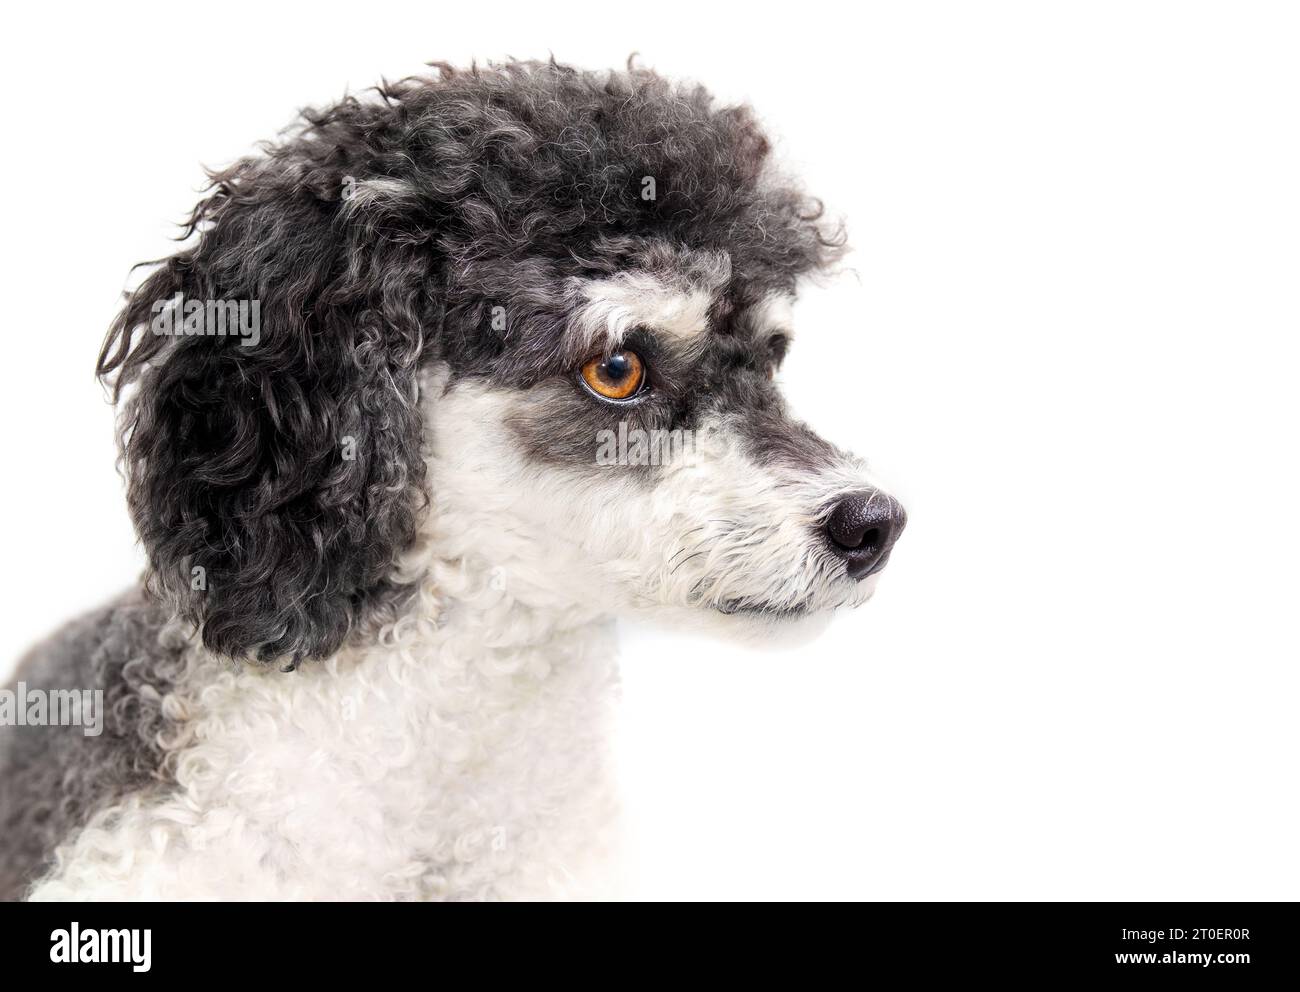 Isolierter, flauschiger Hund, der zur Seite schaut. Kopfaufnahme eines süßen kleinen schwarz-weißen Hundes mit lockigen Haaren. Weiblicher Miniatur-Harlekin-Pudel mit großem Braun Stockfoto